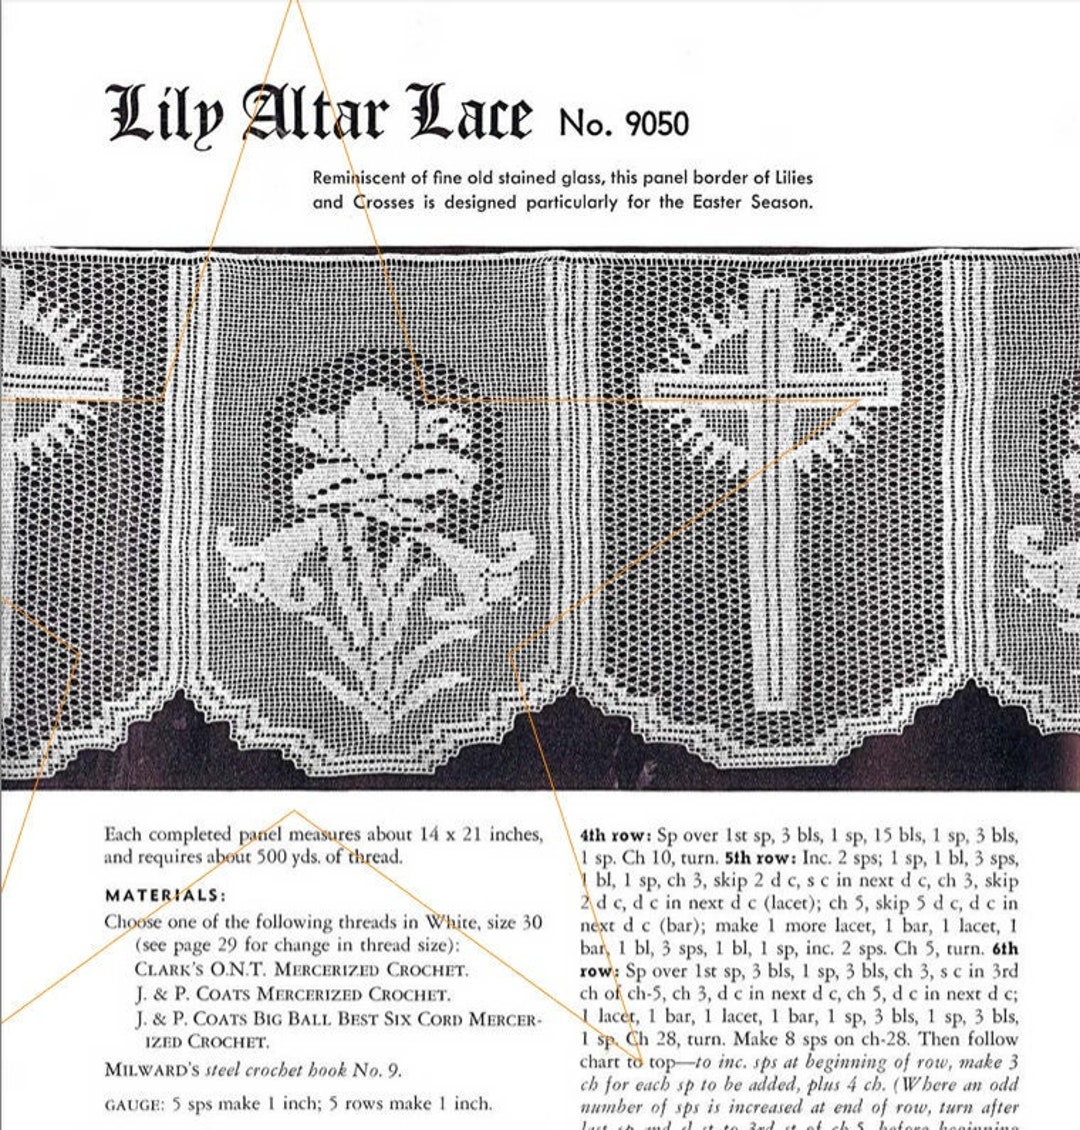 Complete Book of Crochet-stitch Designs: 500 Classic & Original Patterns [Book]